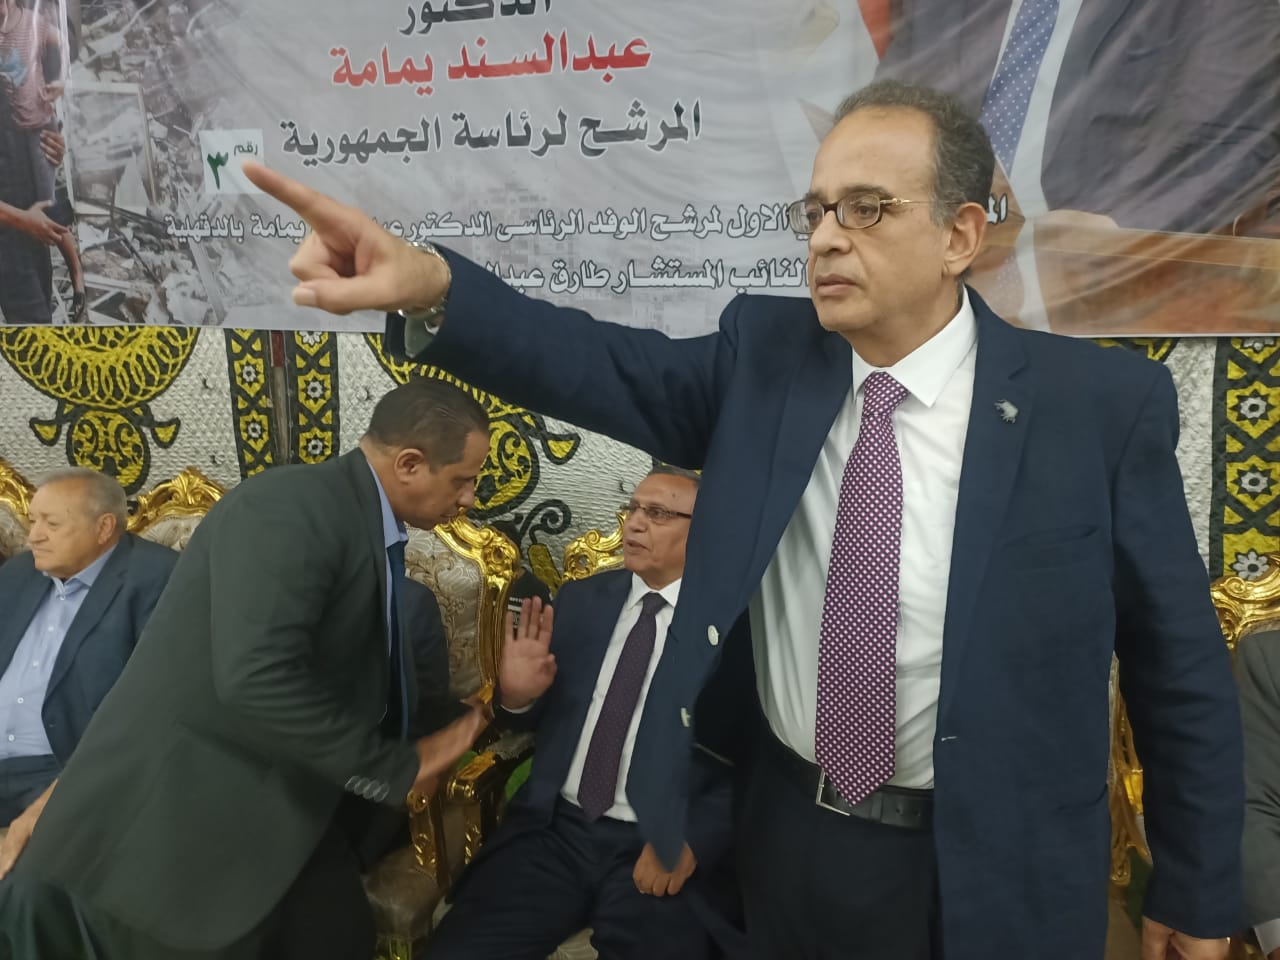  المرشح الرئاسي عبد السند يمامة قبل بدء المؤتمر (3)